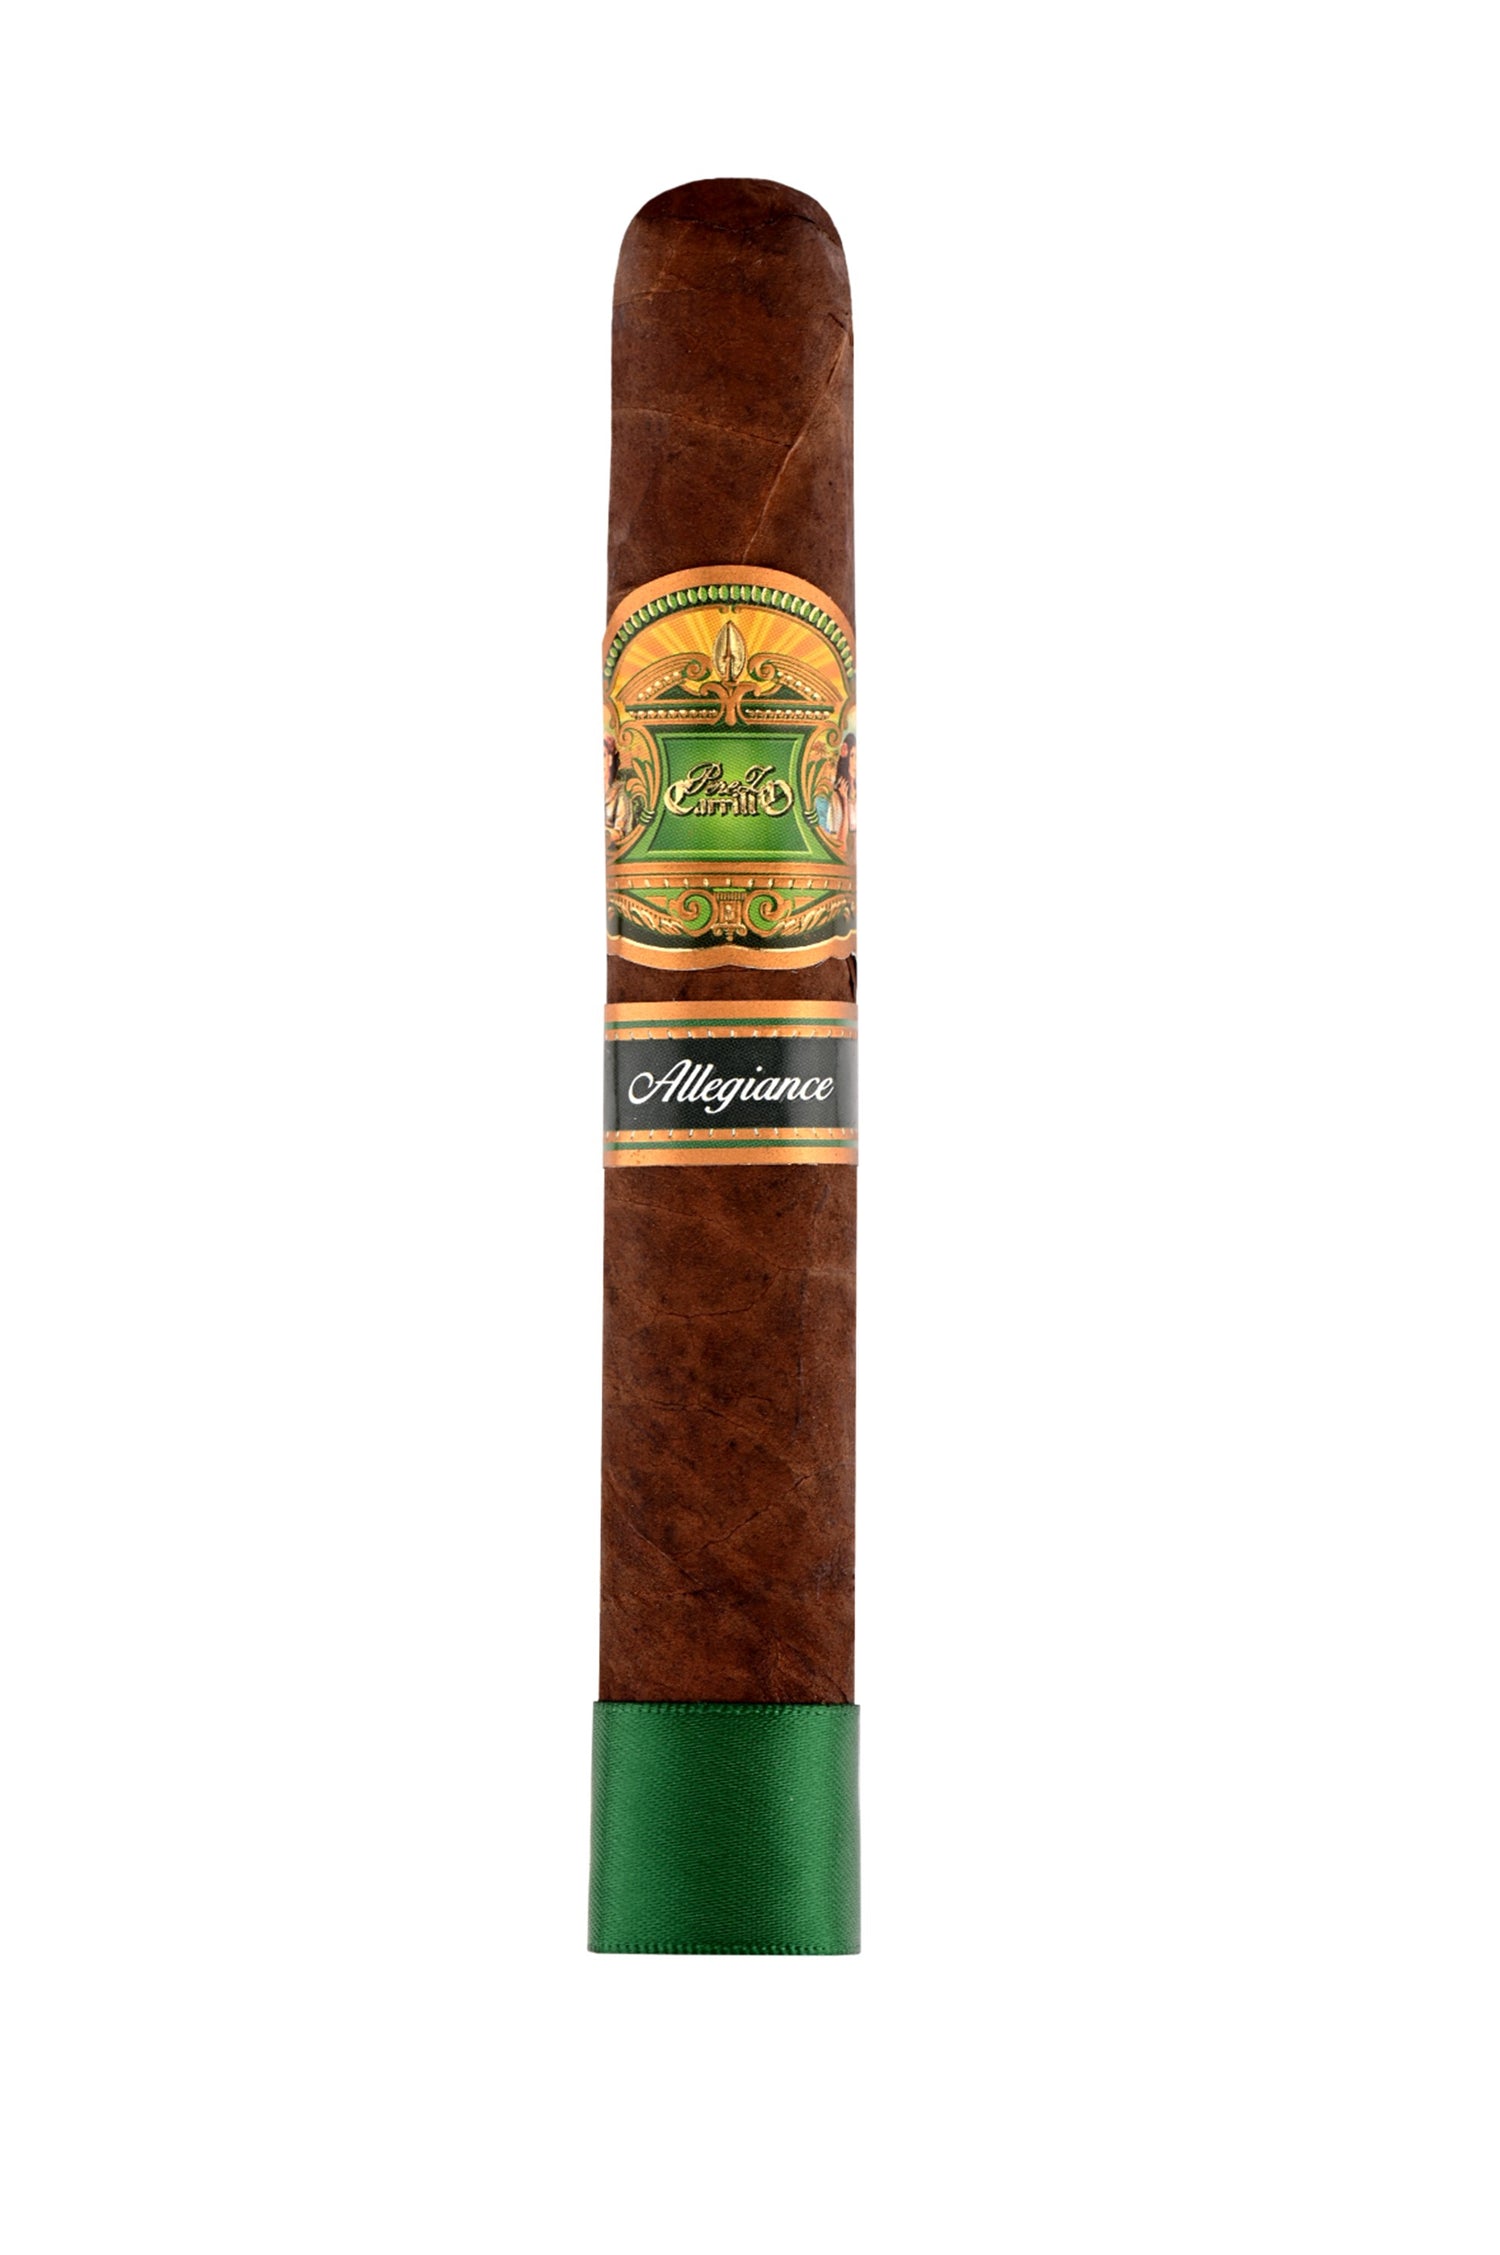 E.P. Carrillo Allegiance Confidant Cigars